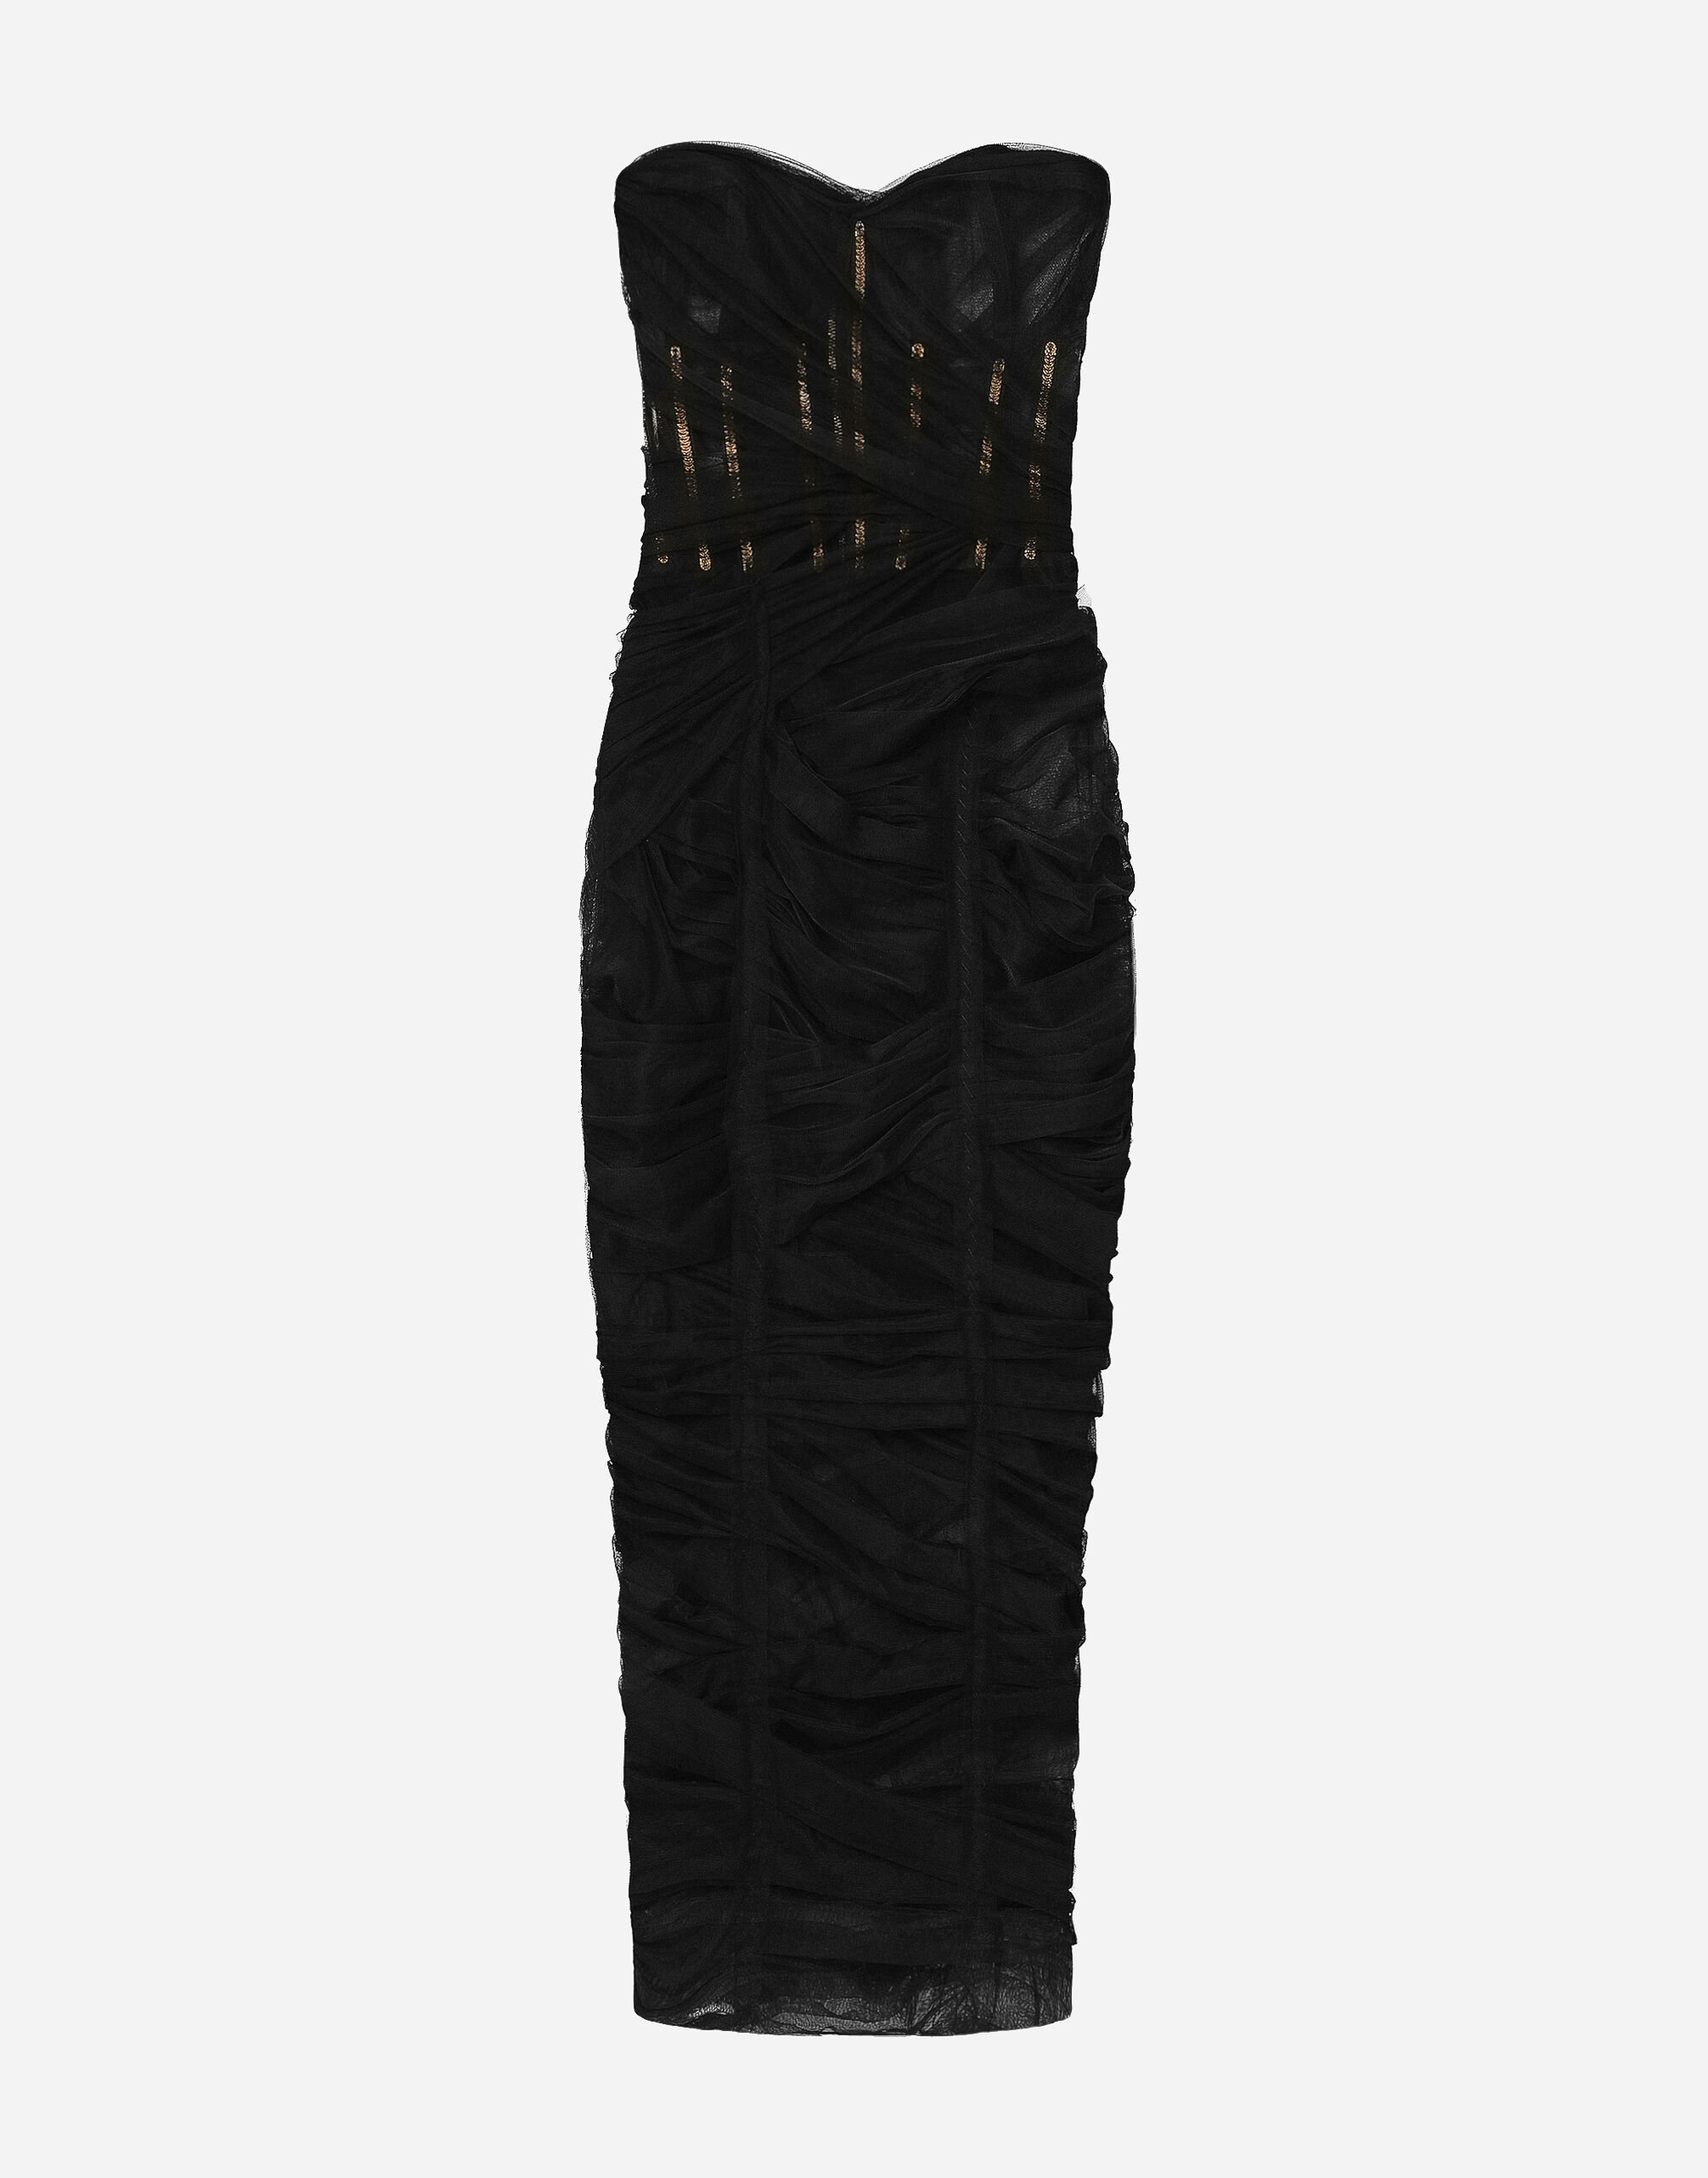 Dolce&Gabbana 드레이프 디테일 튤 코르셋 미드카프 드레스 멀티 컬러 BB5970AR441